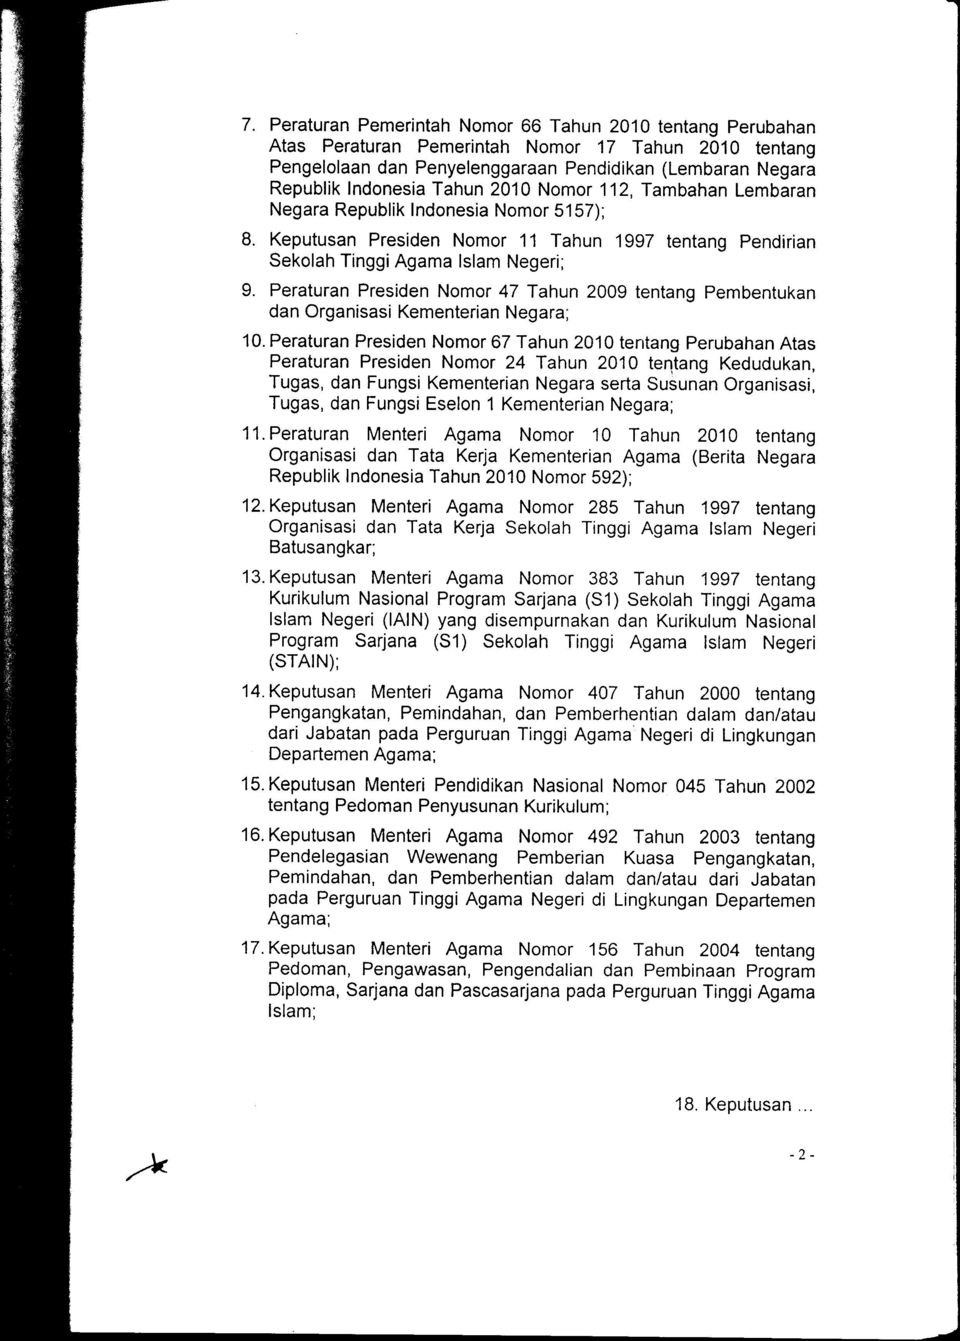 Peraturan Presiden Nomor 47 Tahun 2009 tentang Pembentukan dan Organisasi Kementerian Negara; 10.